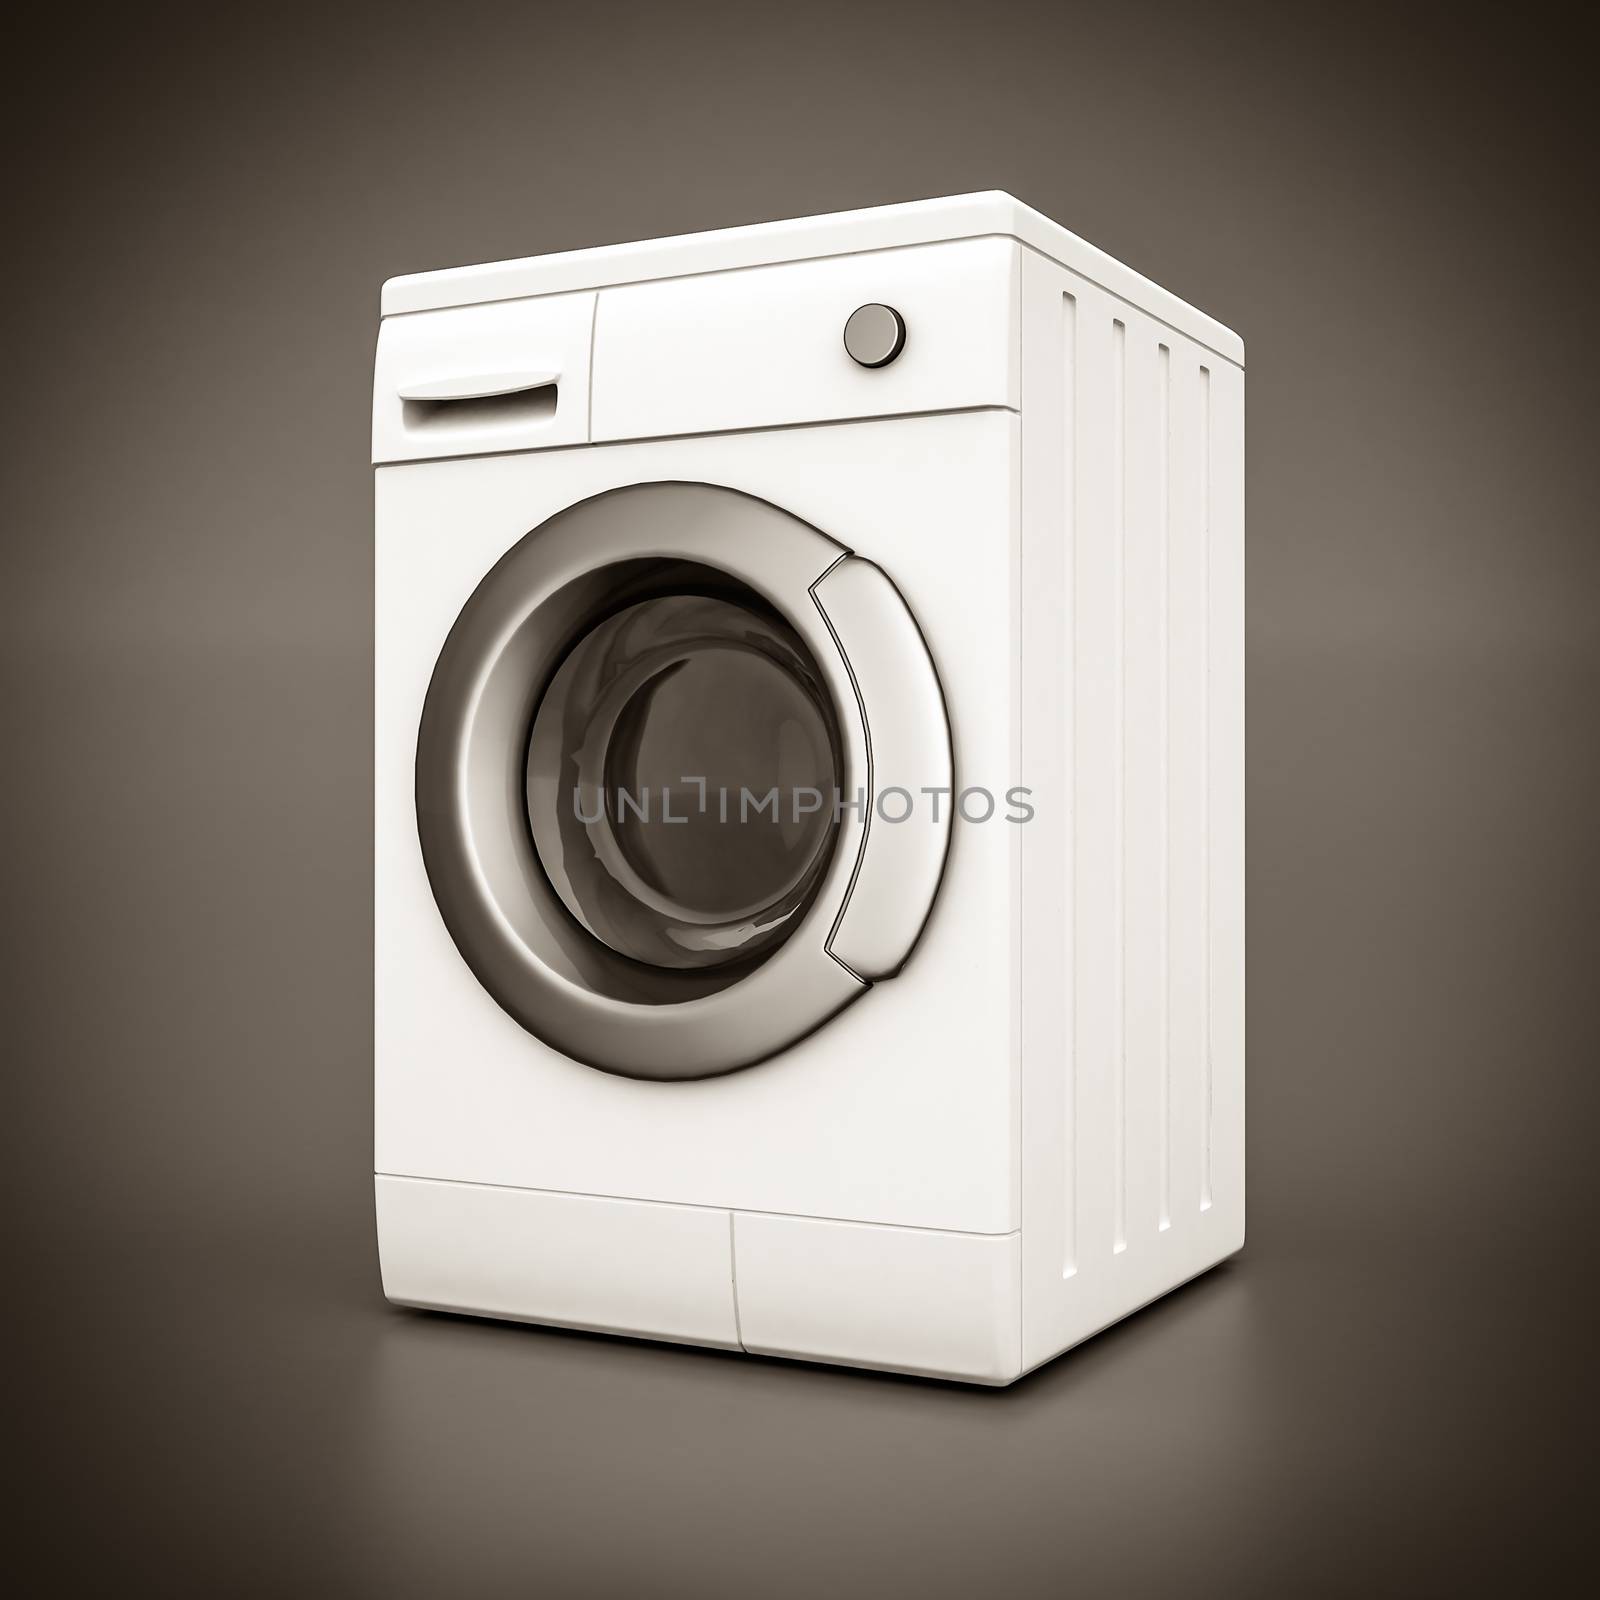 Washing machine by mrgarry